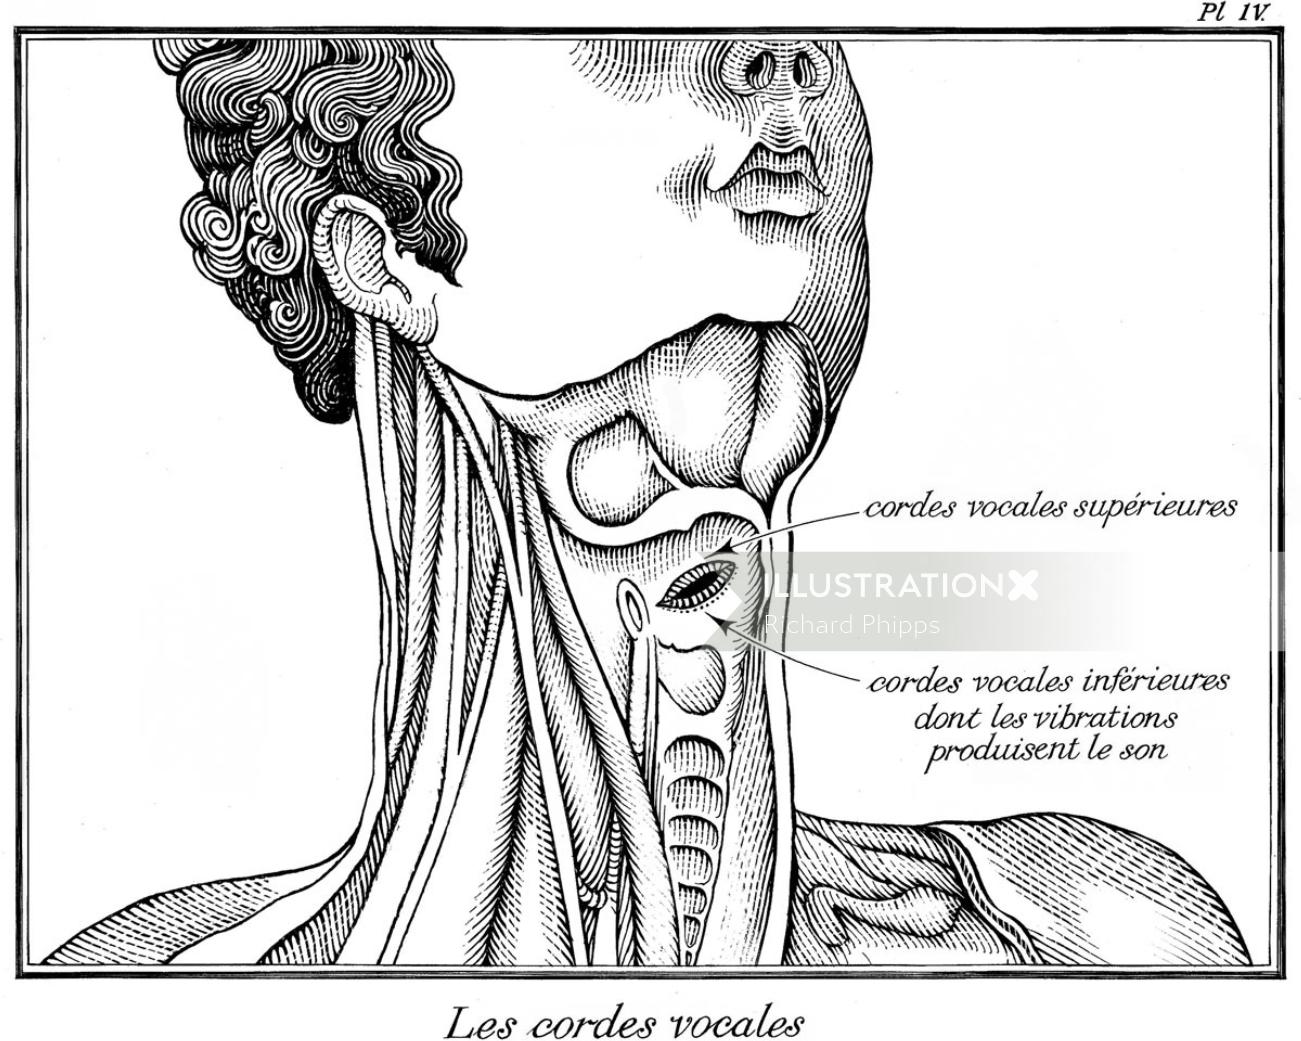 Illustration du cou et de la gorge par Richard Phipps